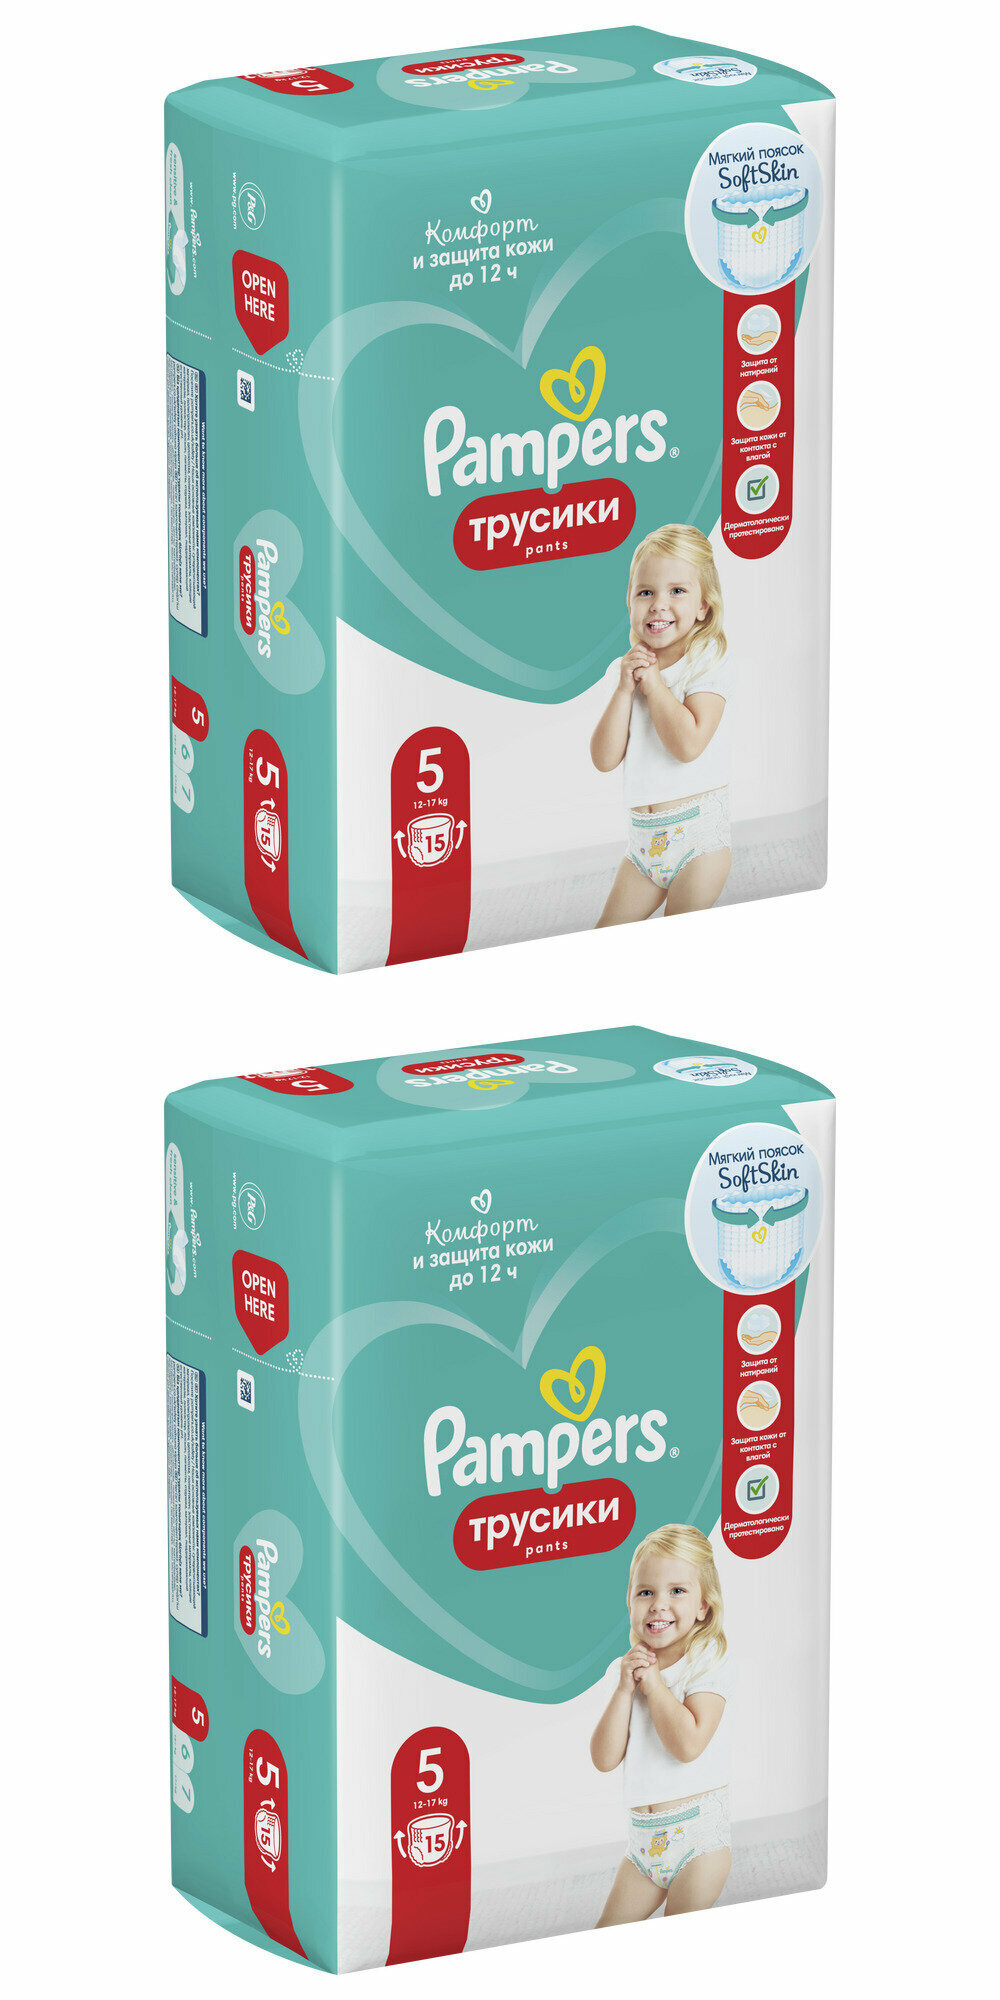 Pampers Подгузники-трусики детские Pants для малышей 12-17 кг, 5 размер, 15 шт, 2 упаковки